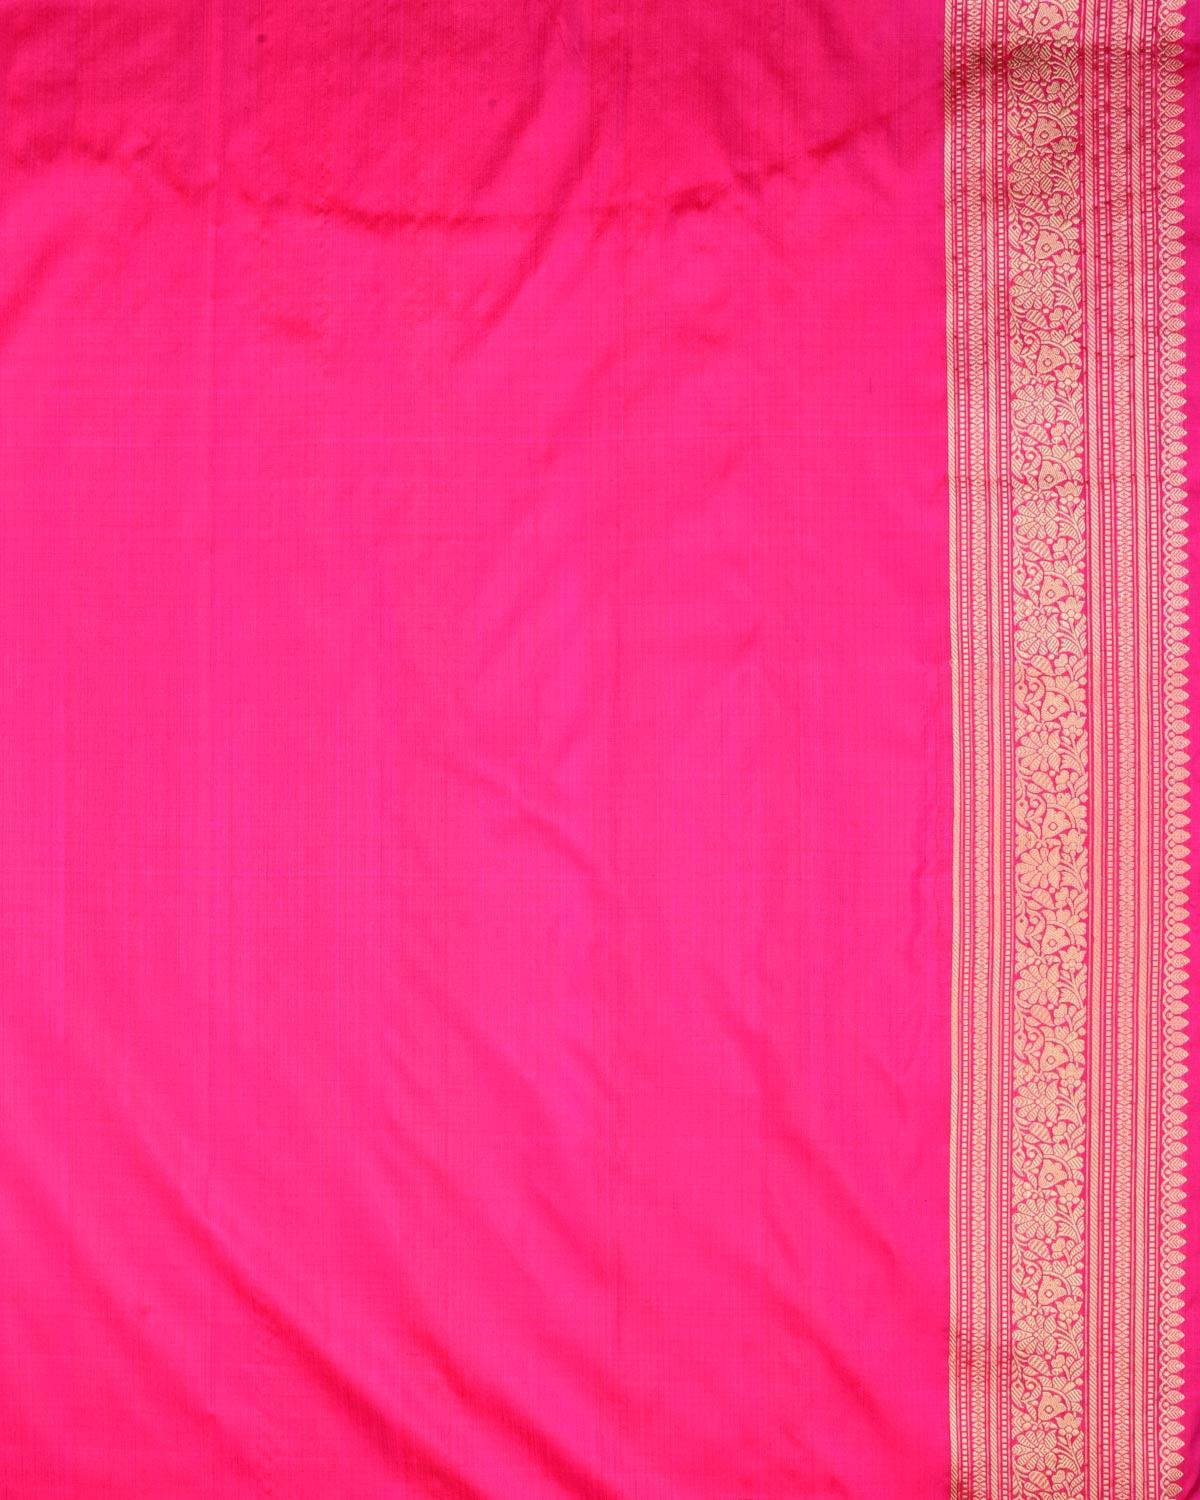 Rani Pink Banarasi Sparrow & Lion Brocade Handwoven Katan Silk Saree - By HolyWeaves, Benares